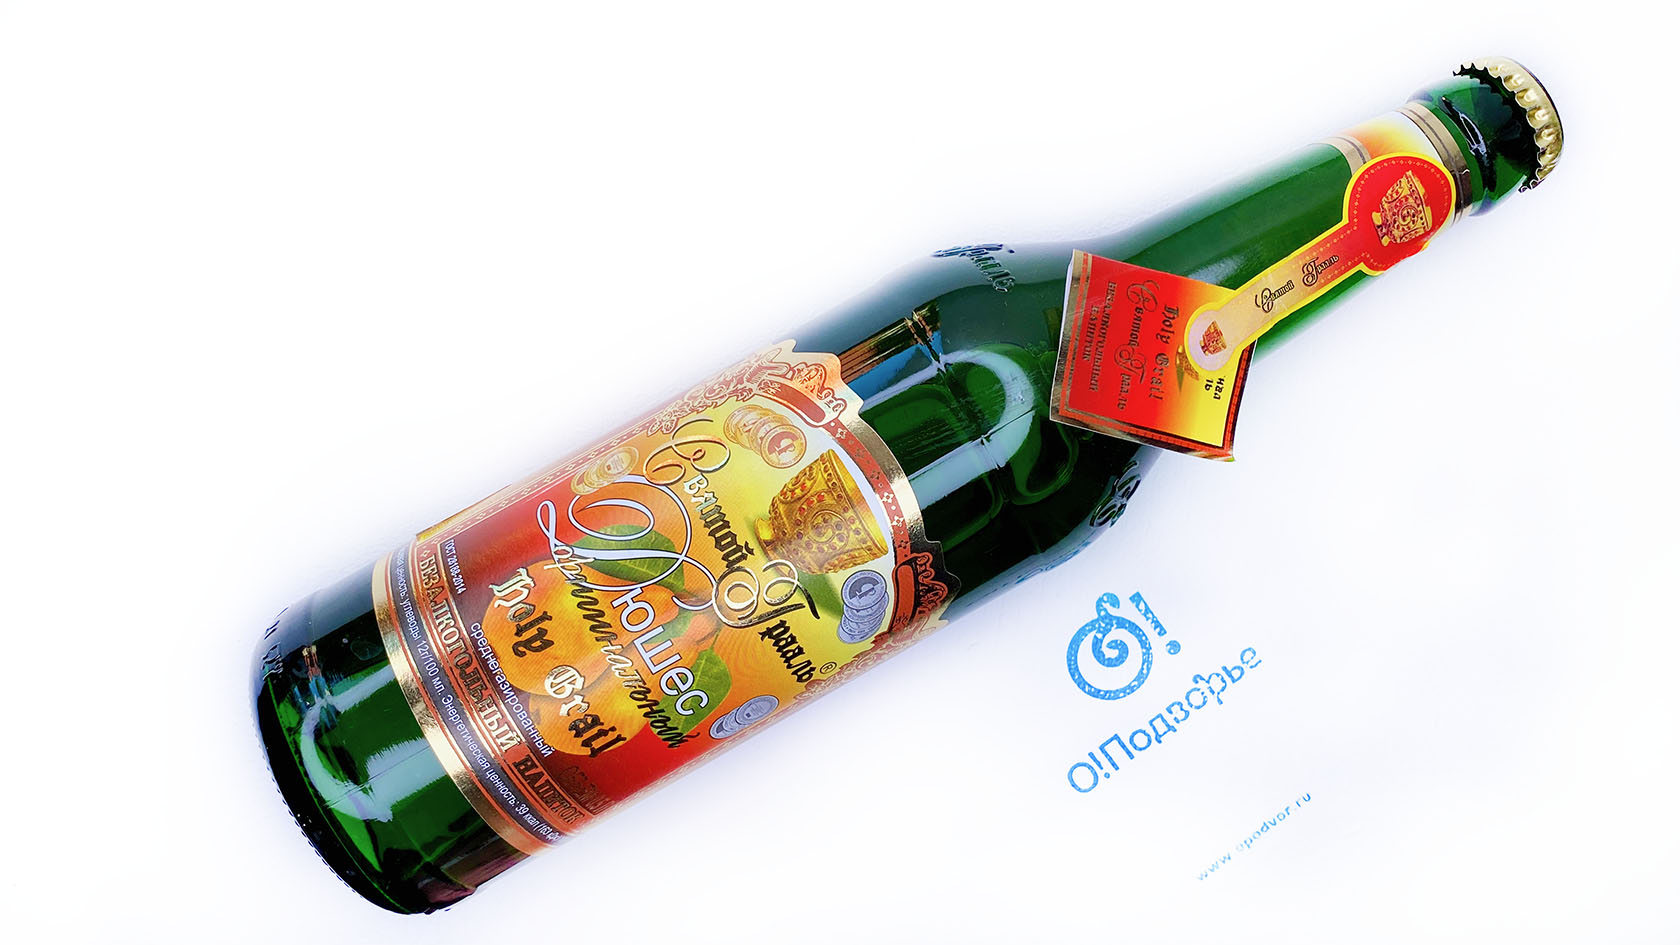 Безалкогольный напиток "Святой грааль" -  Дюшес оригинальный среднегазированный, 0,5 литра